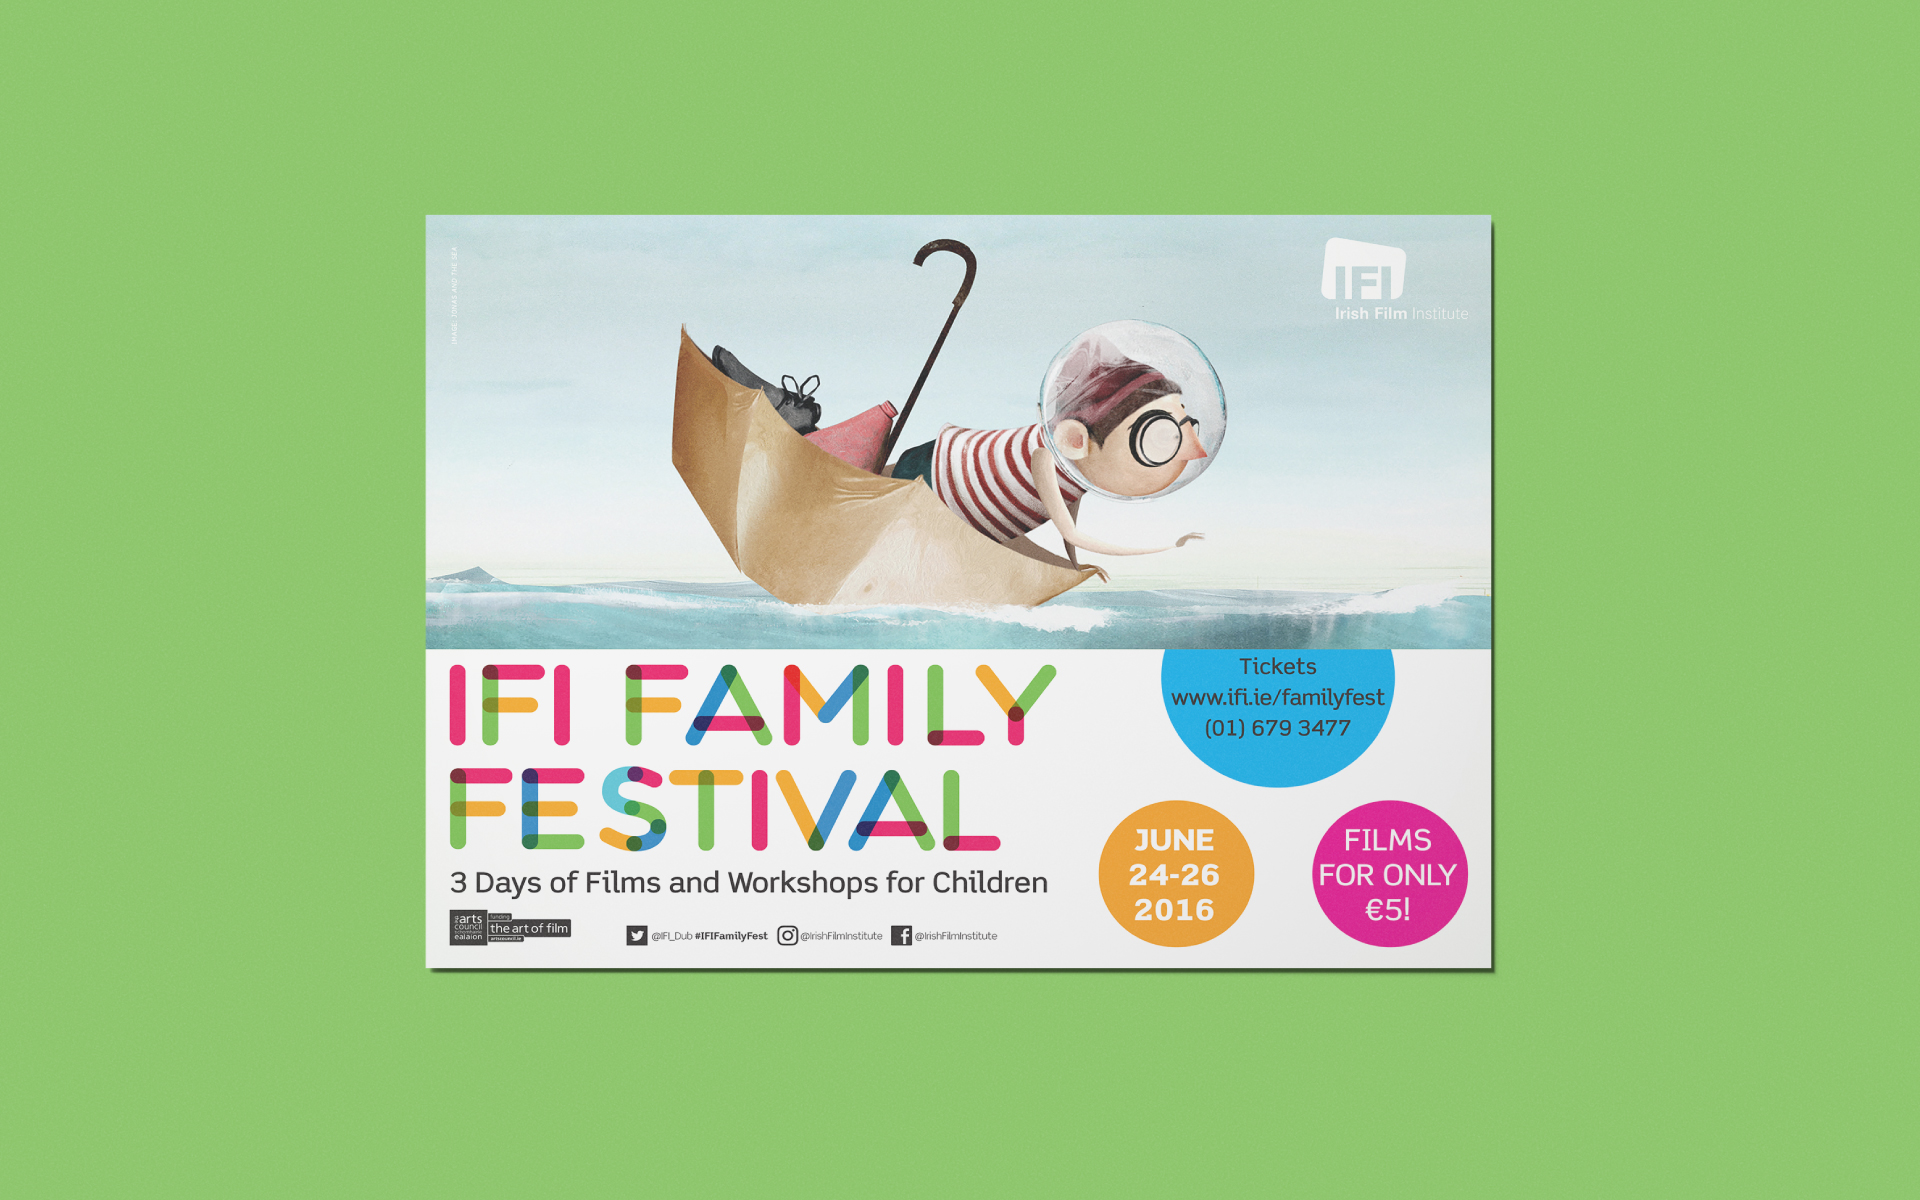 Irish Film Institute Family Festival poster